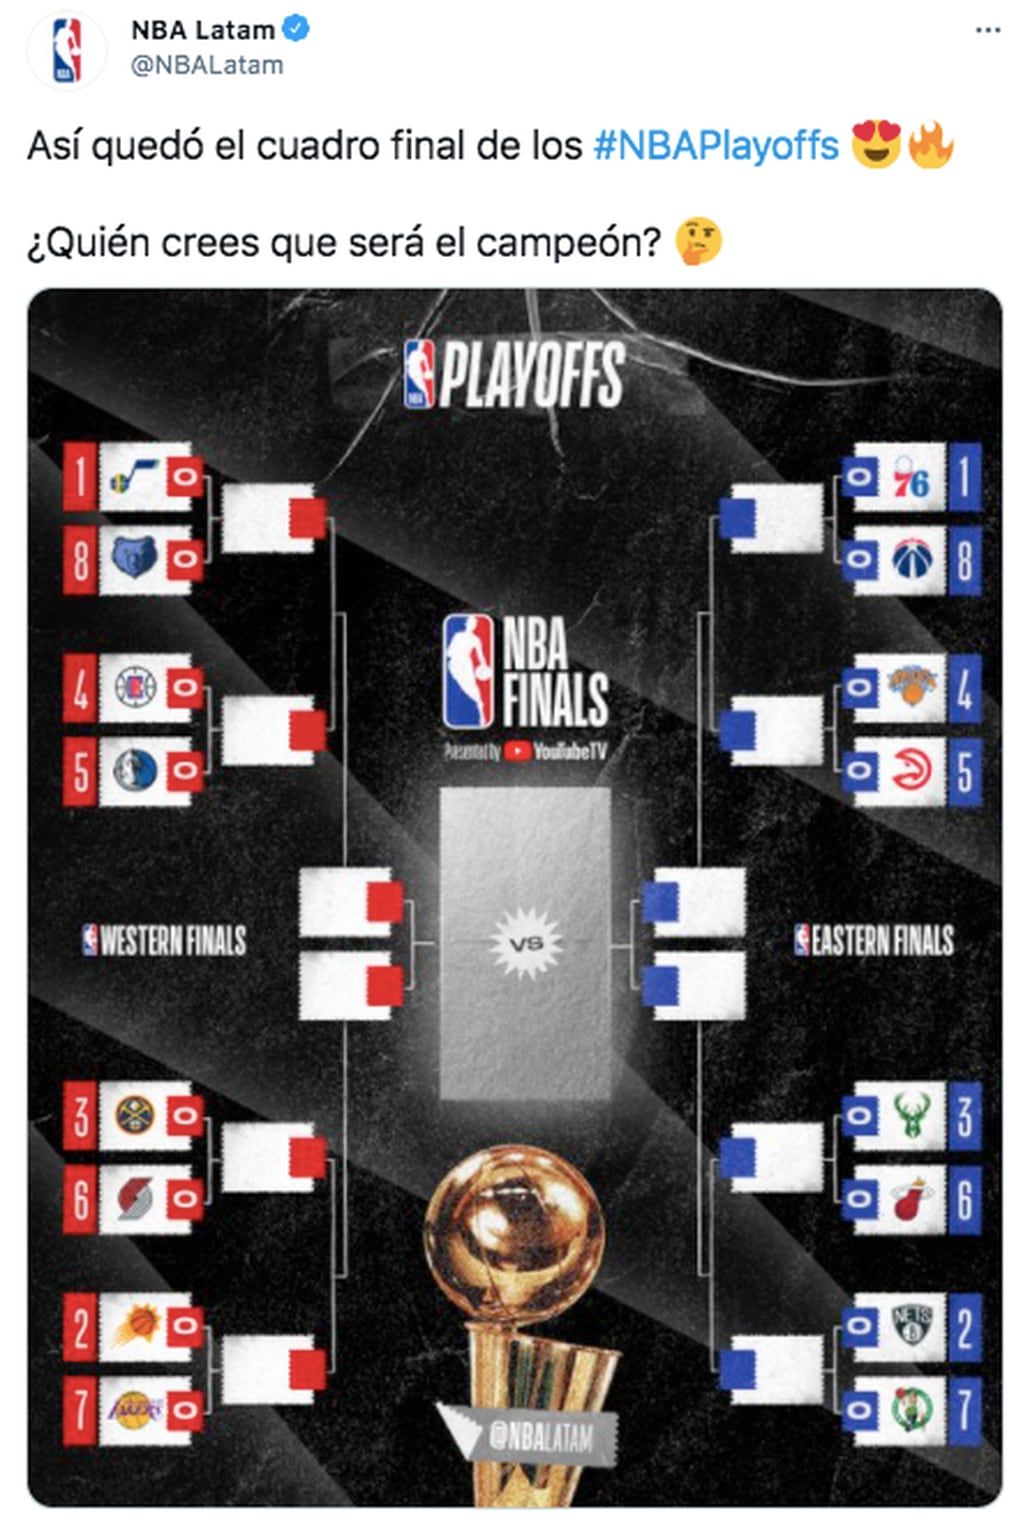 El cuadro definitivo de los playoffs de la NBA.